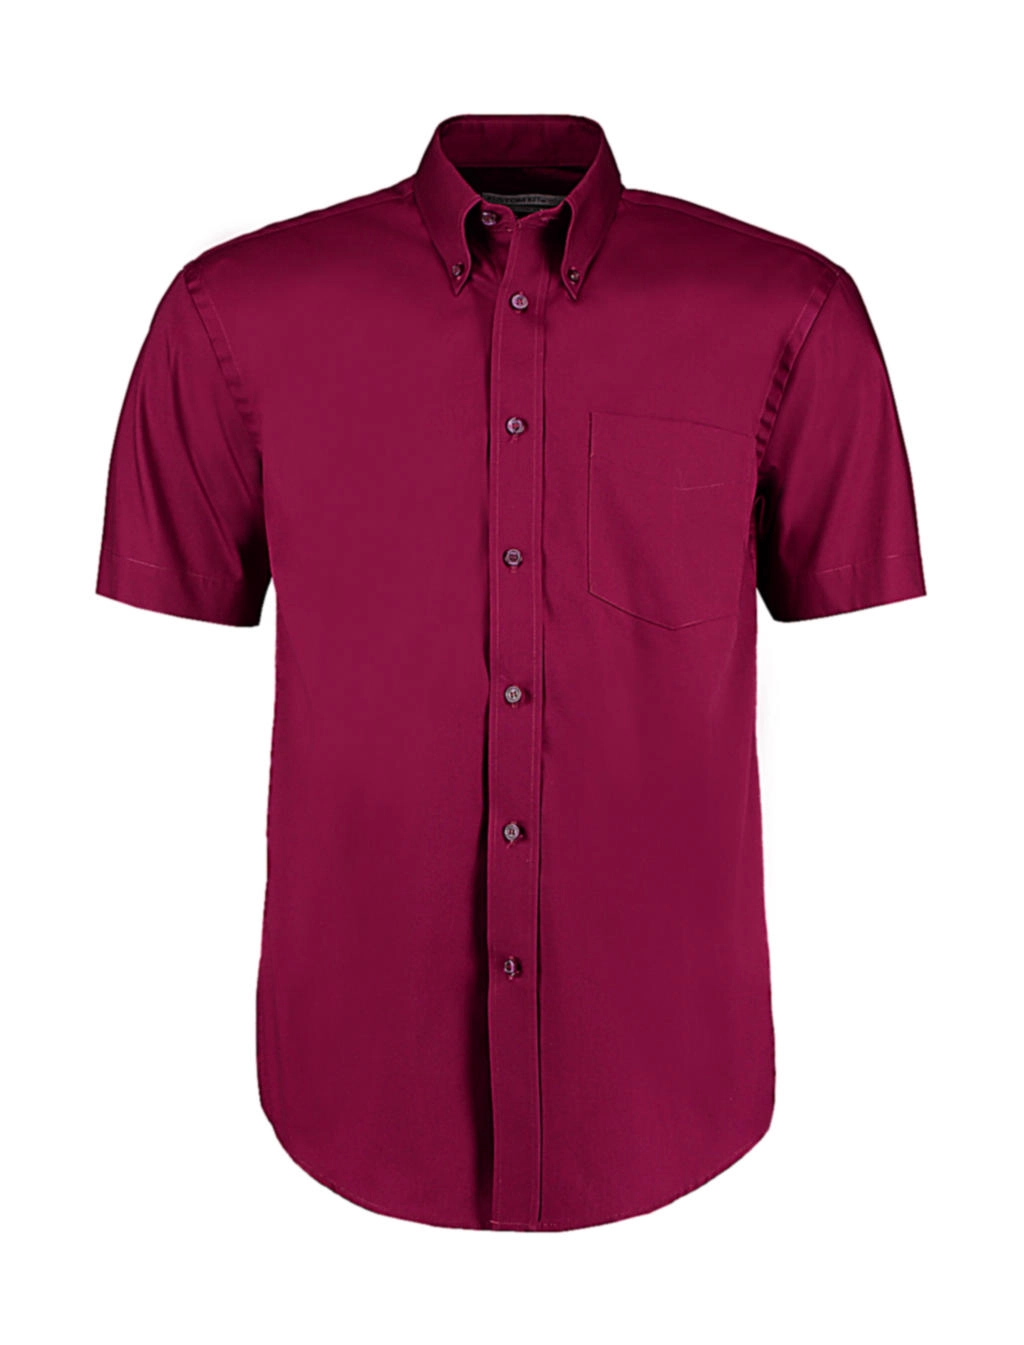 Classic Fit Premium Oxford Shirt SSL zum Besticken und Bedrucken in der Farbe Burgundy mit Ihren Logo, Schriftzug oder Motiv.